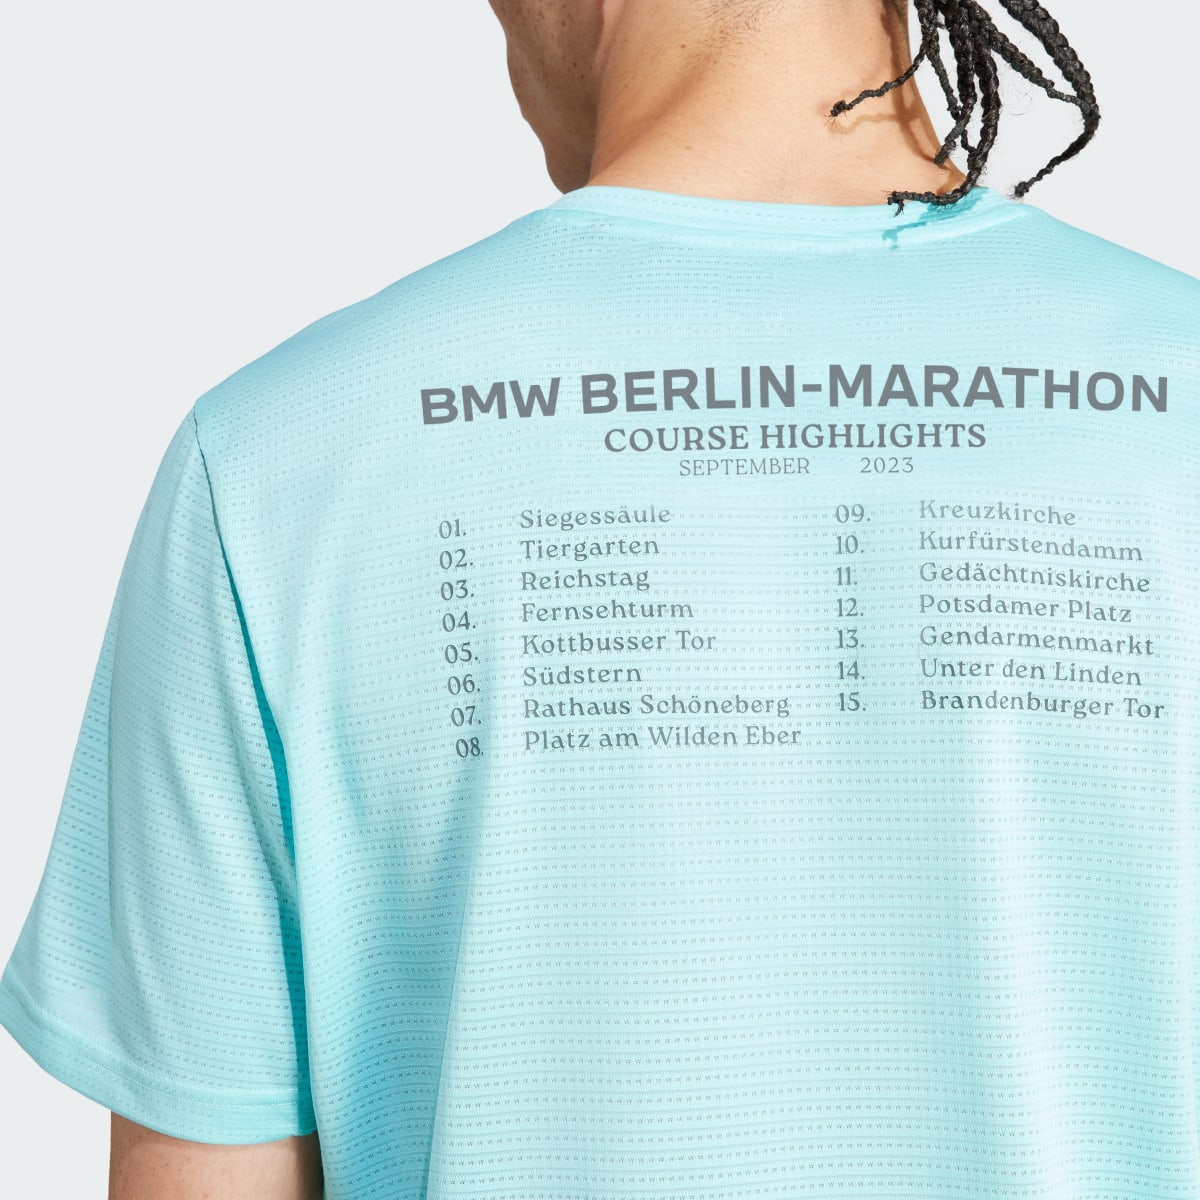 Adidas T-shirt Finisher da BMW BERLIN-MARATHON 2023. 7